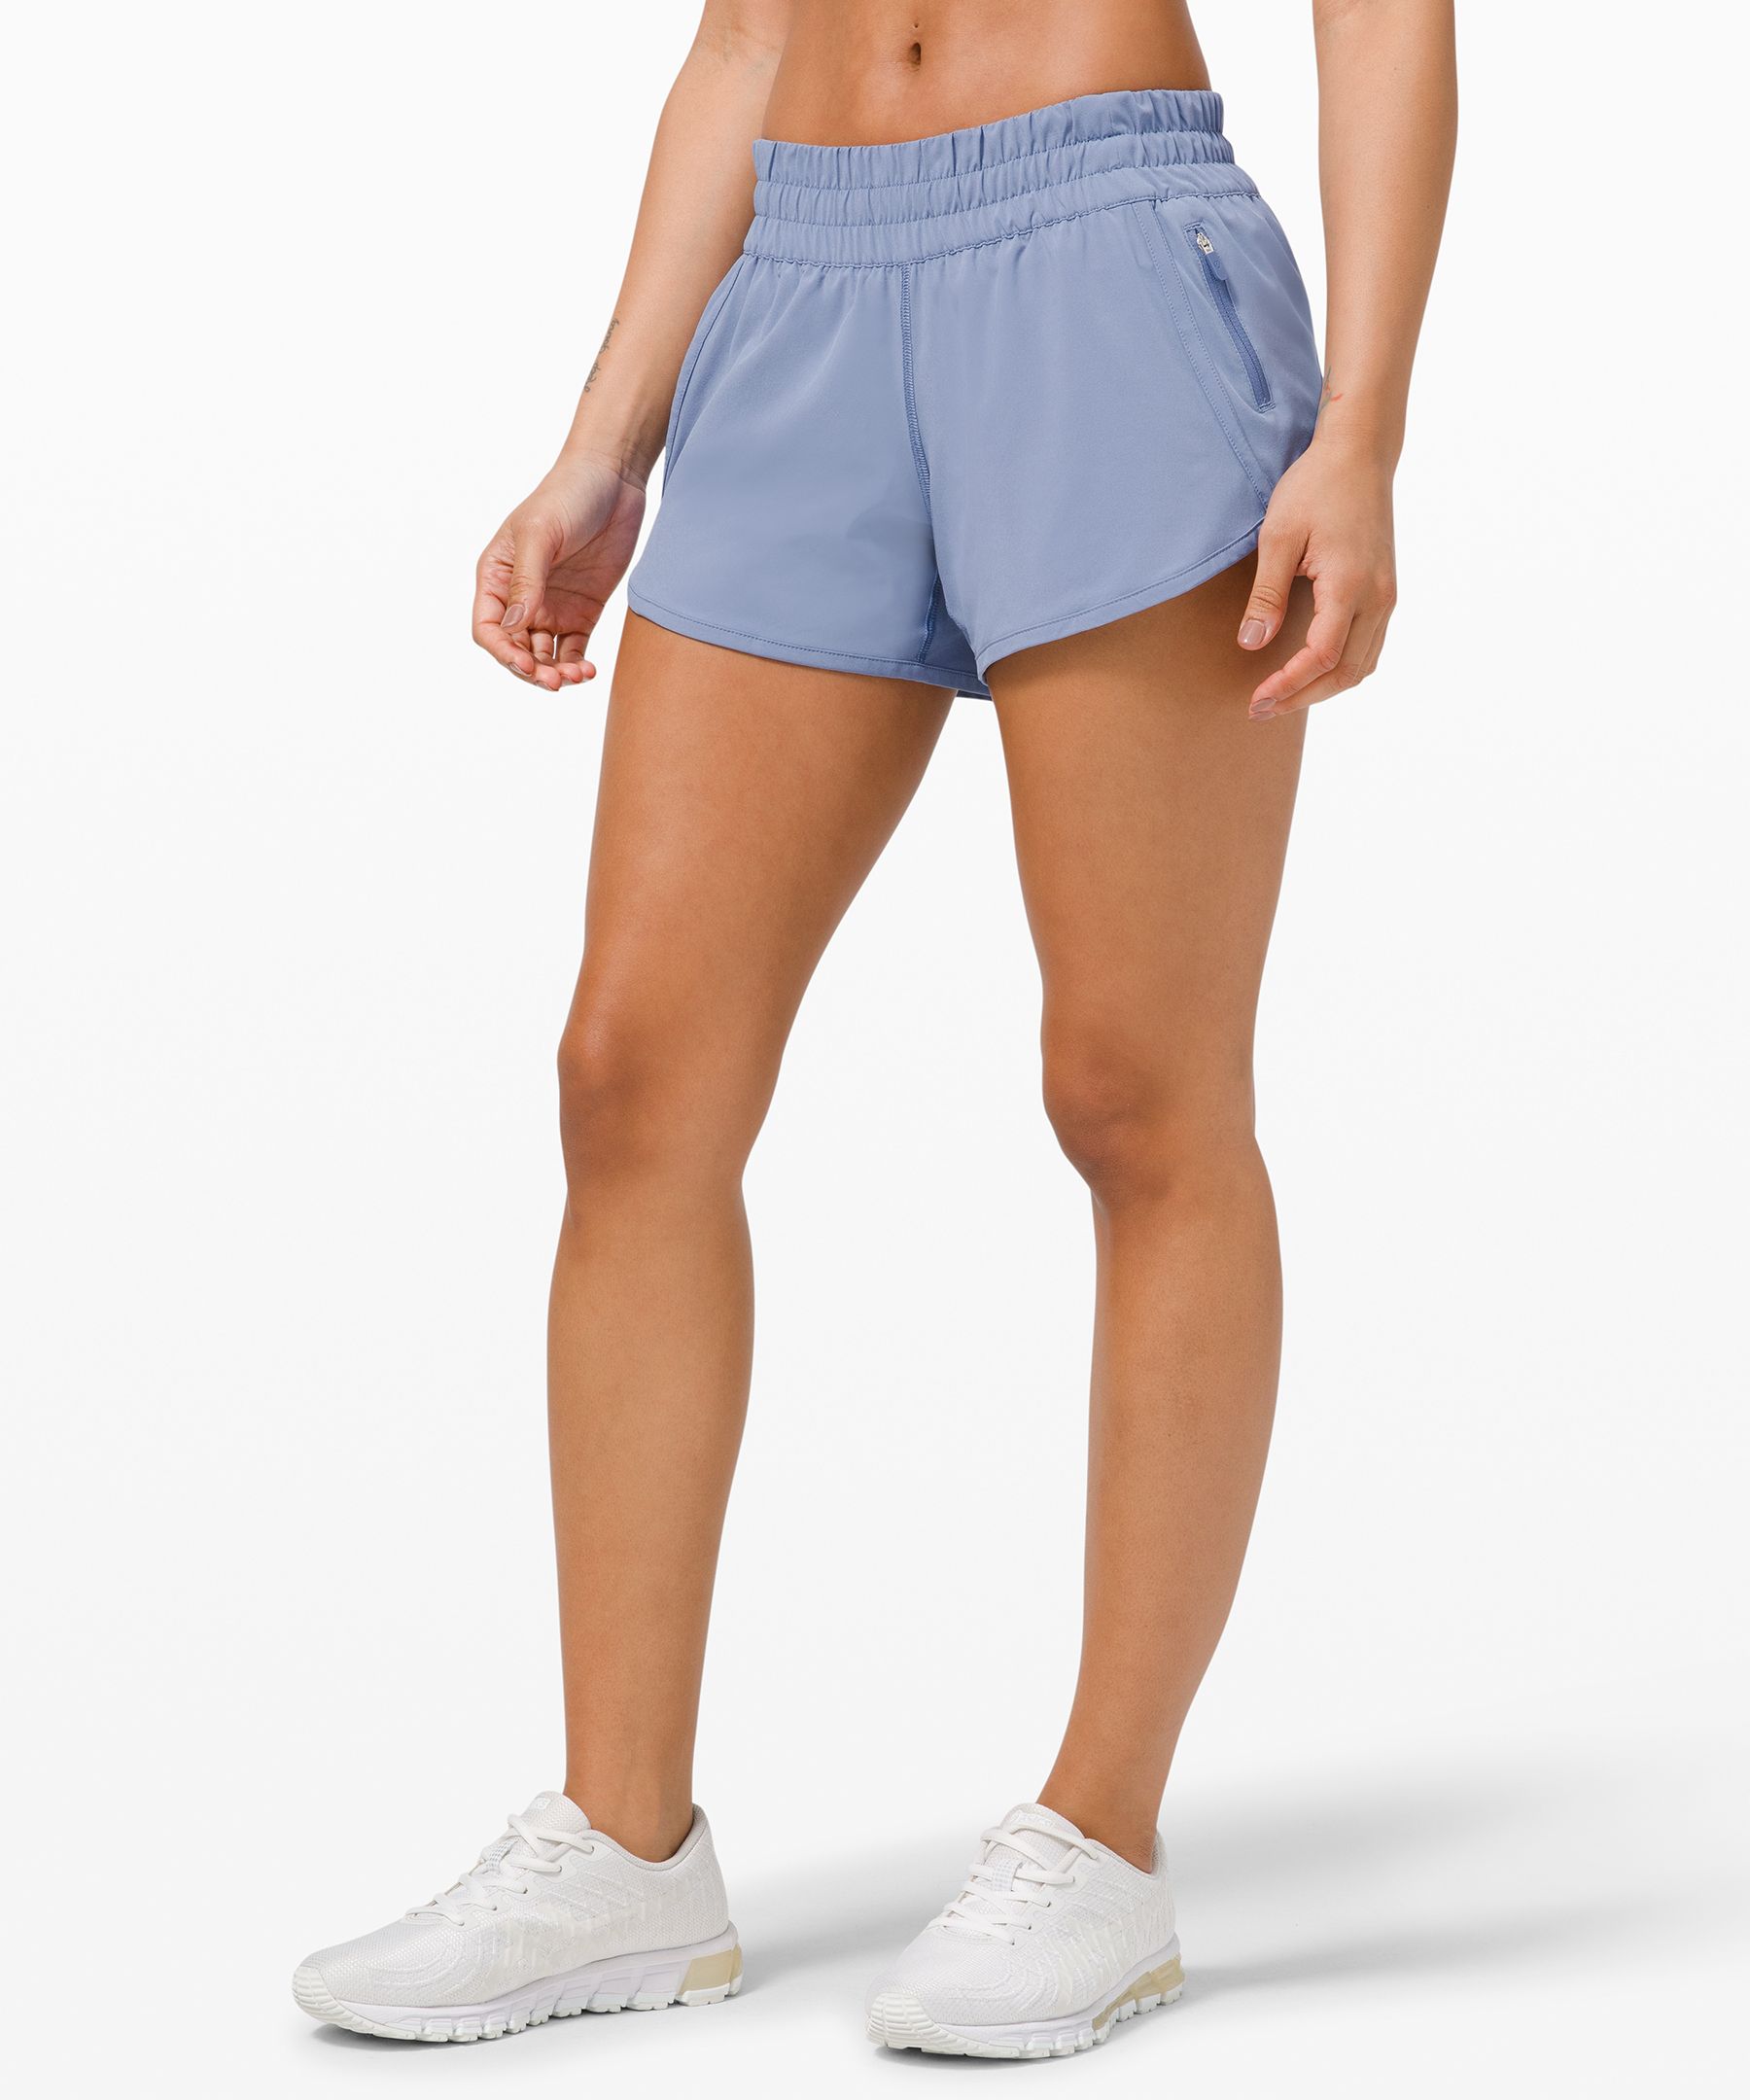 lululemon active shorts